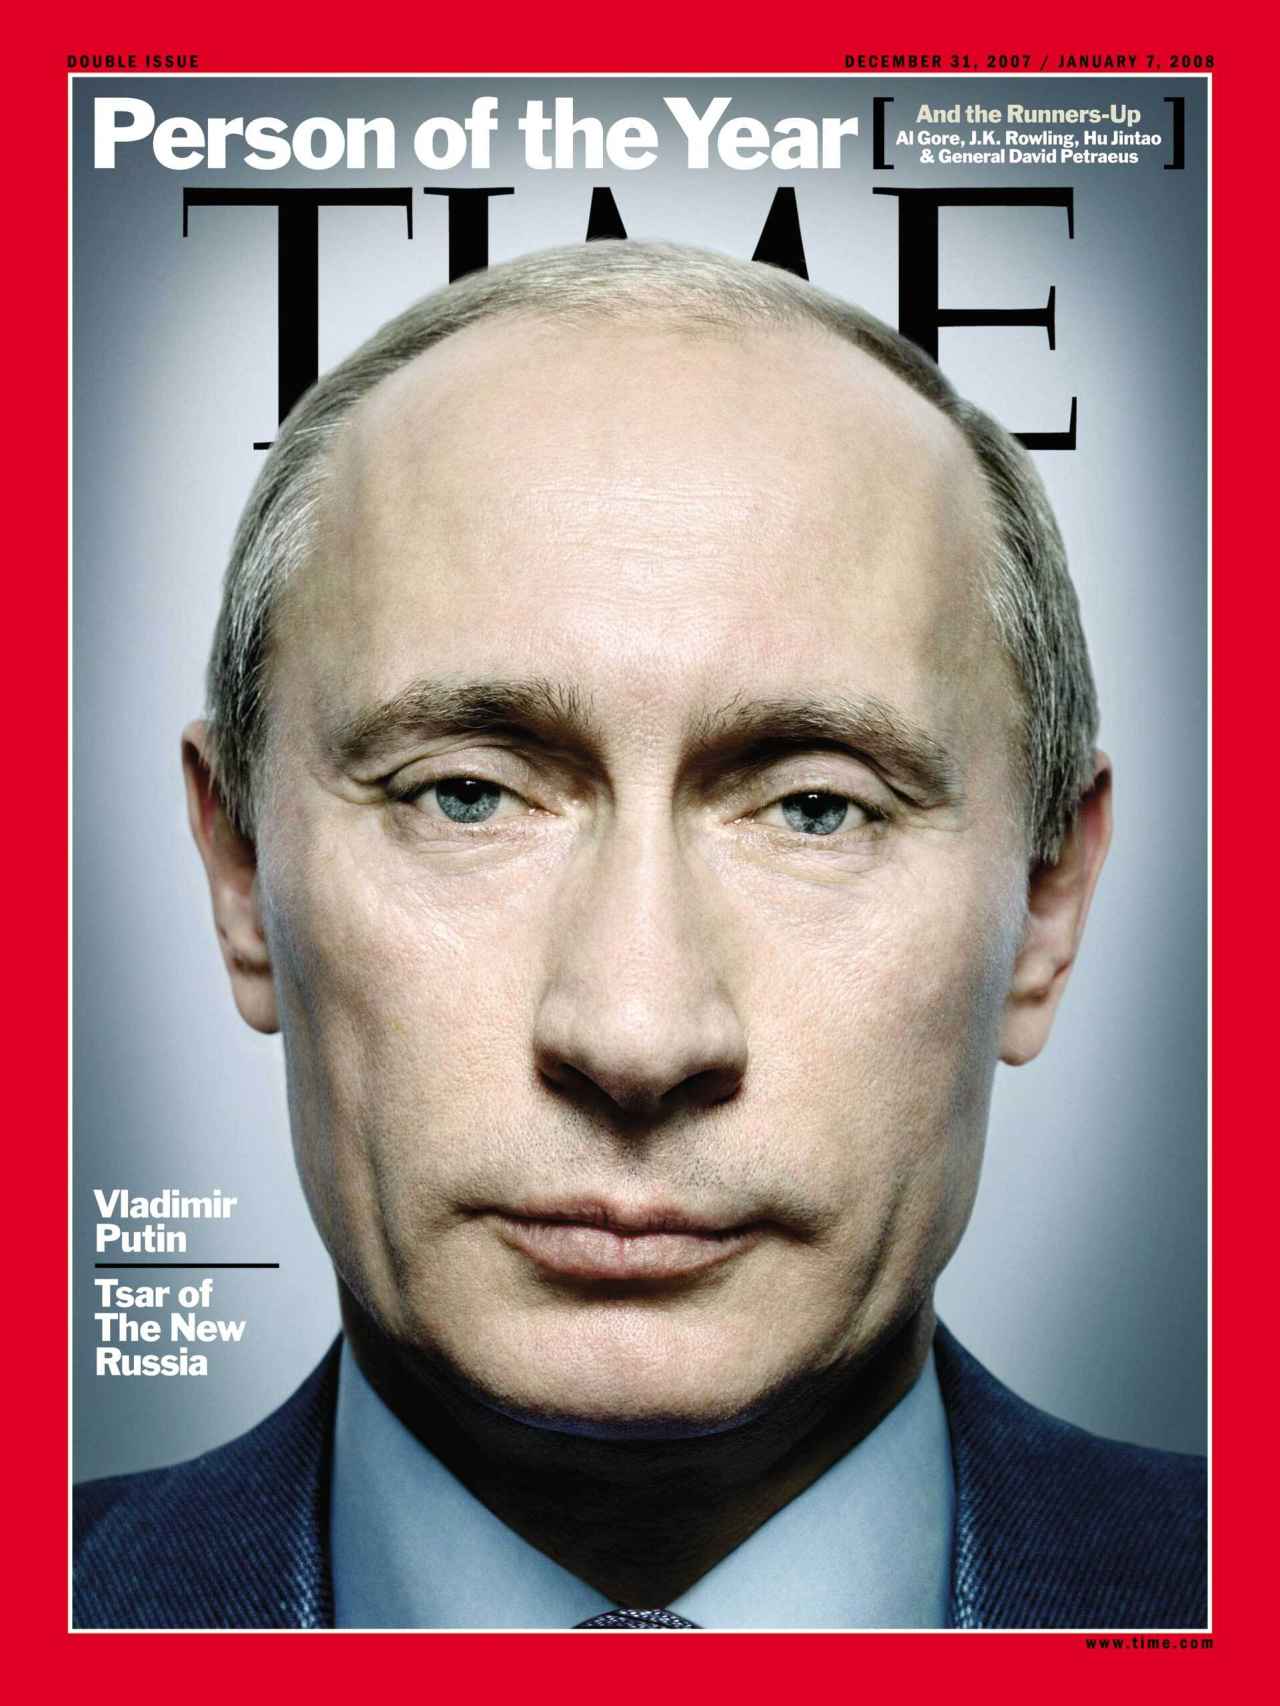 El presidente ruso Vladímir Putin en la portada de la revista 'Time' de diciembre de 2007, nombrado Persona del Año.